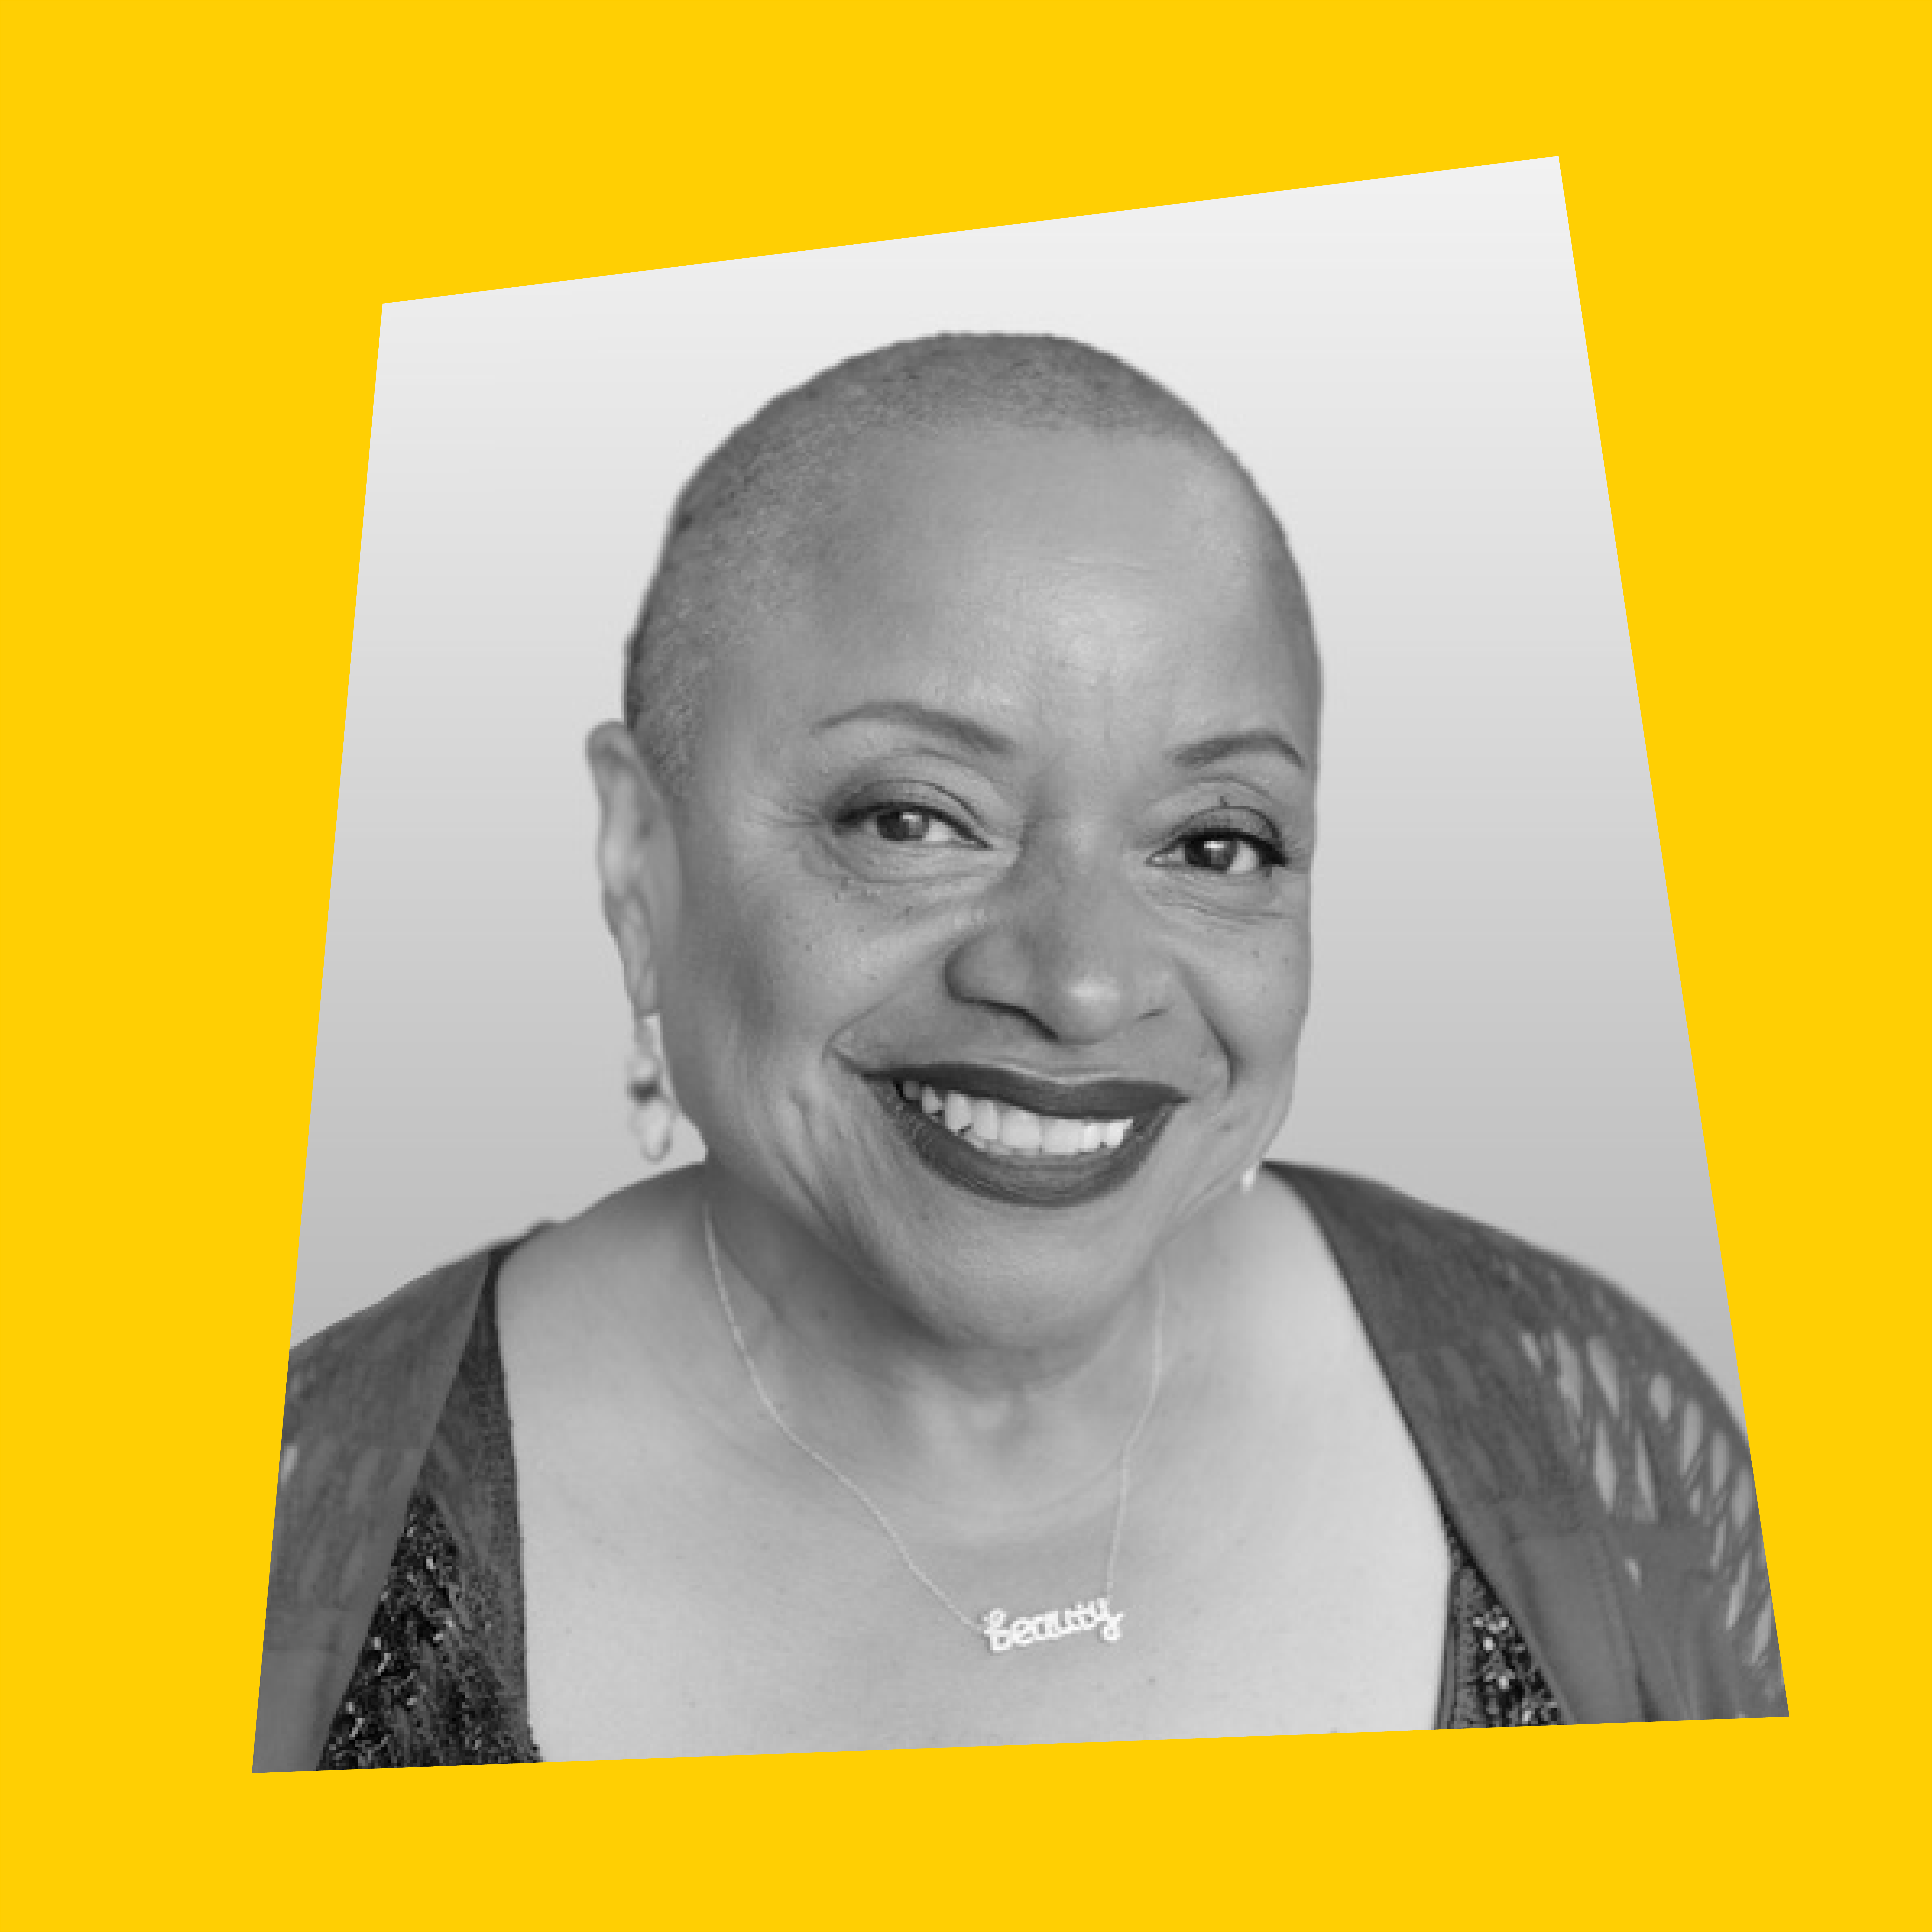 Episode 6: Deborah Willis on Capturing Black Joy